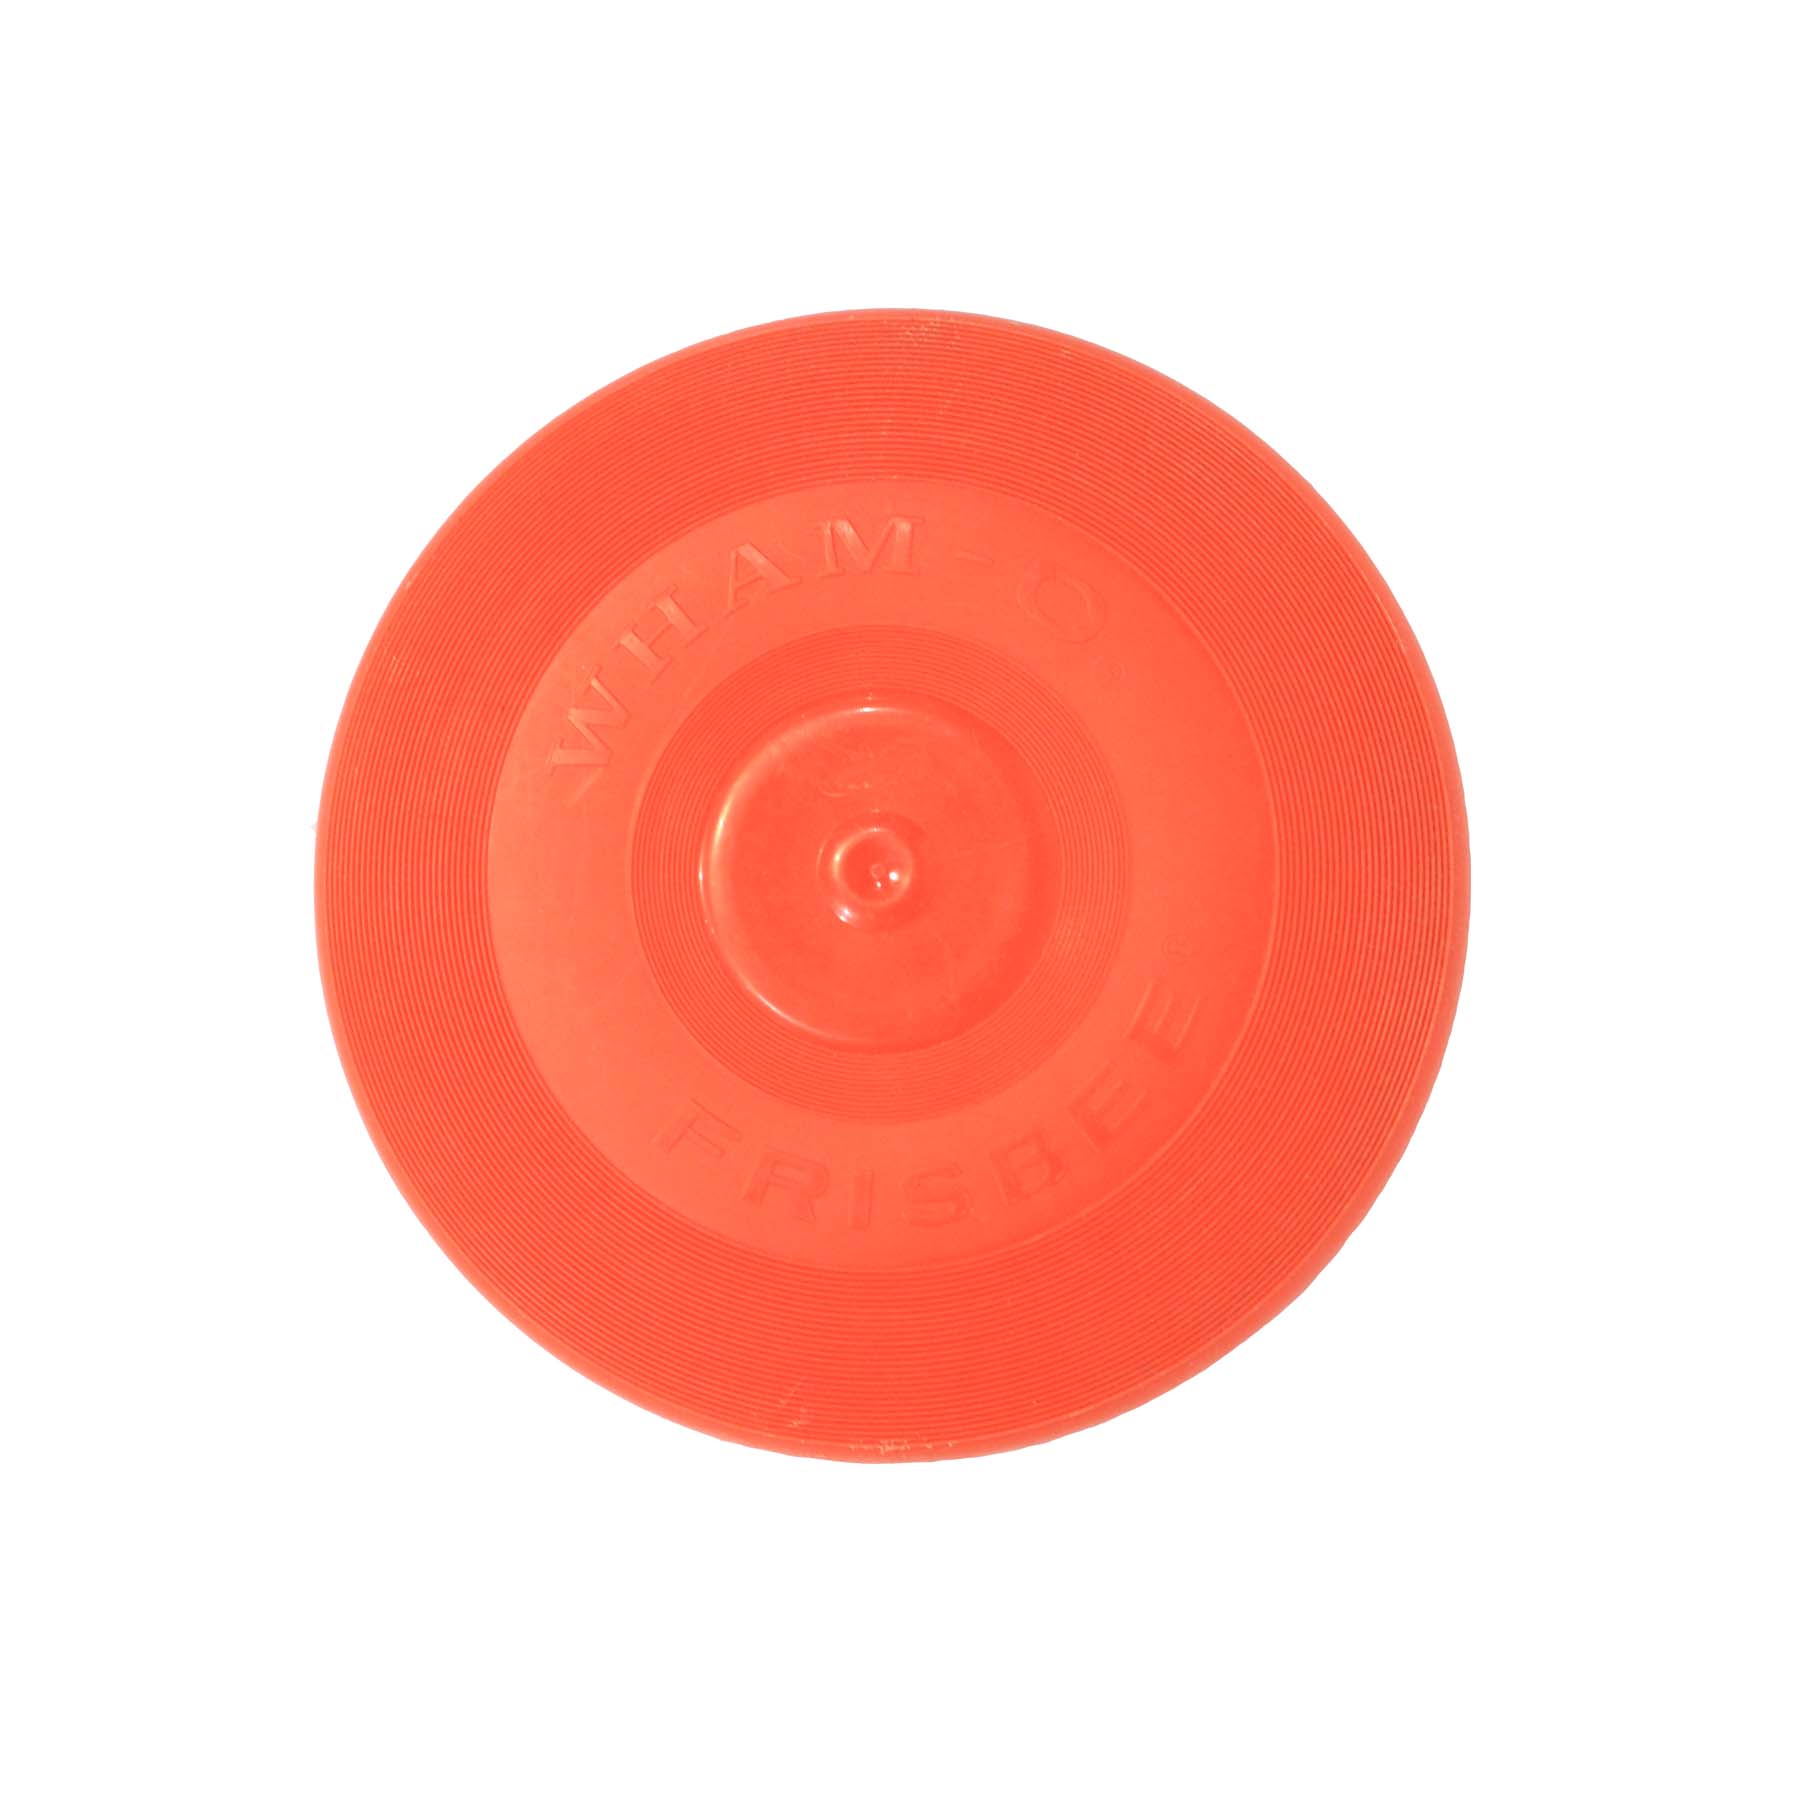 Original Wham-o Frisbee